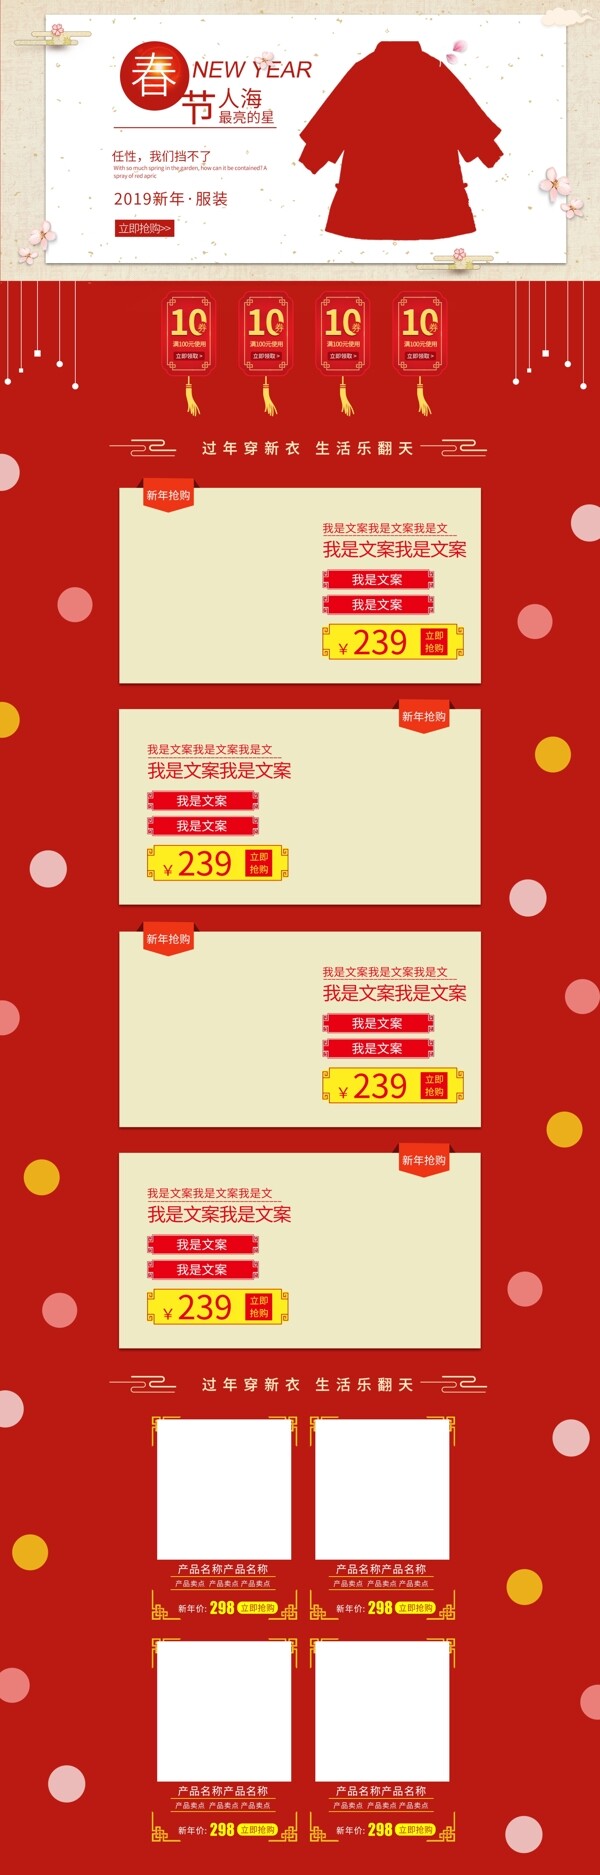 淘宝电商红色喜庆新年新春服装首页促销模板